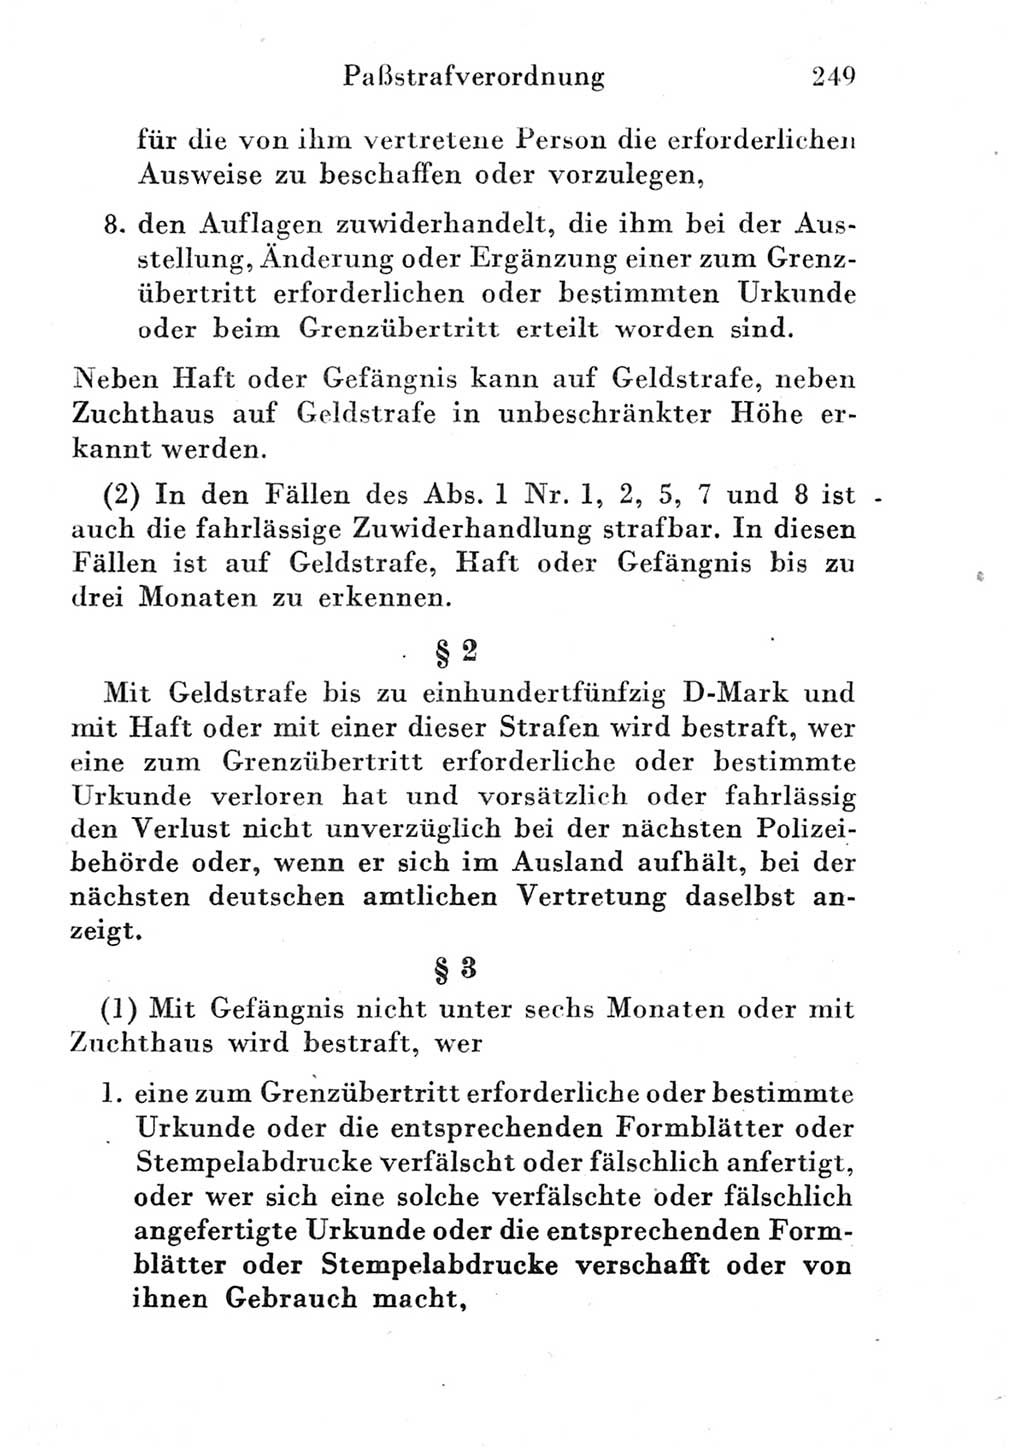 Strafgesetzbuch (StGB) und andere Strafgesetze [Deutsche Demokratische Republik (DDR)] 1951, Seite 249 (StGB Strafges. DDR 1951, S. 249)